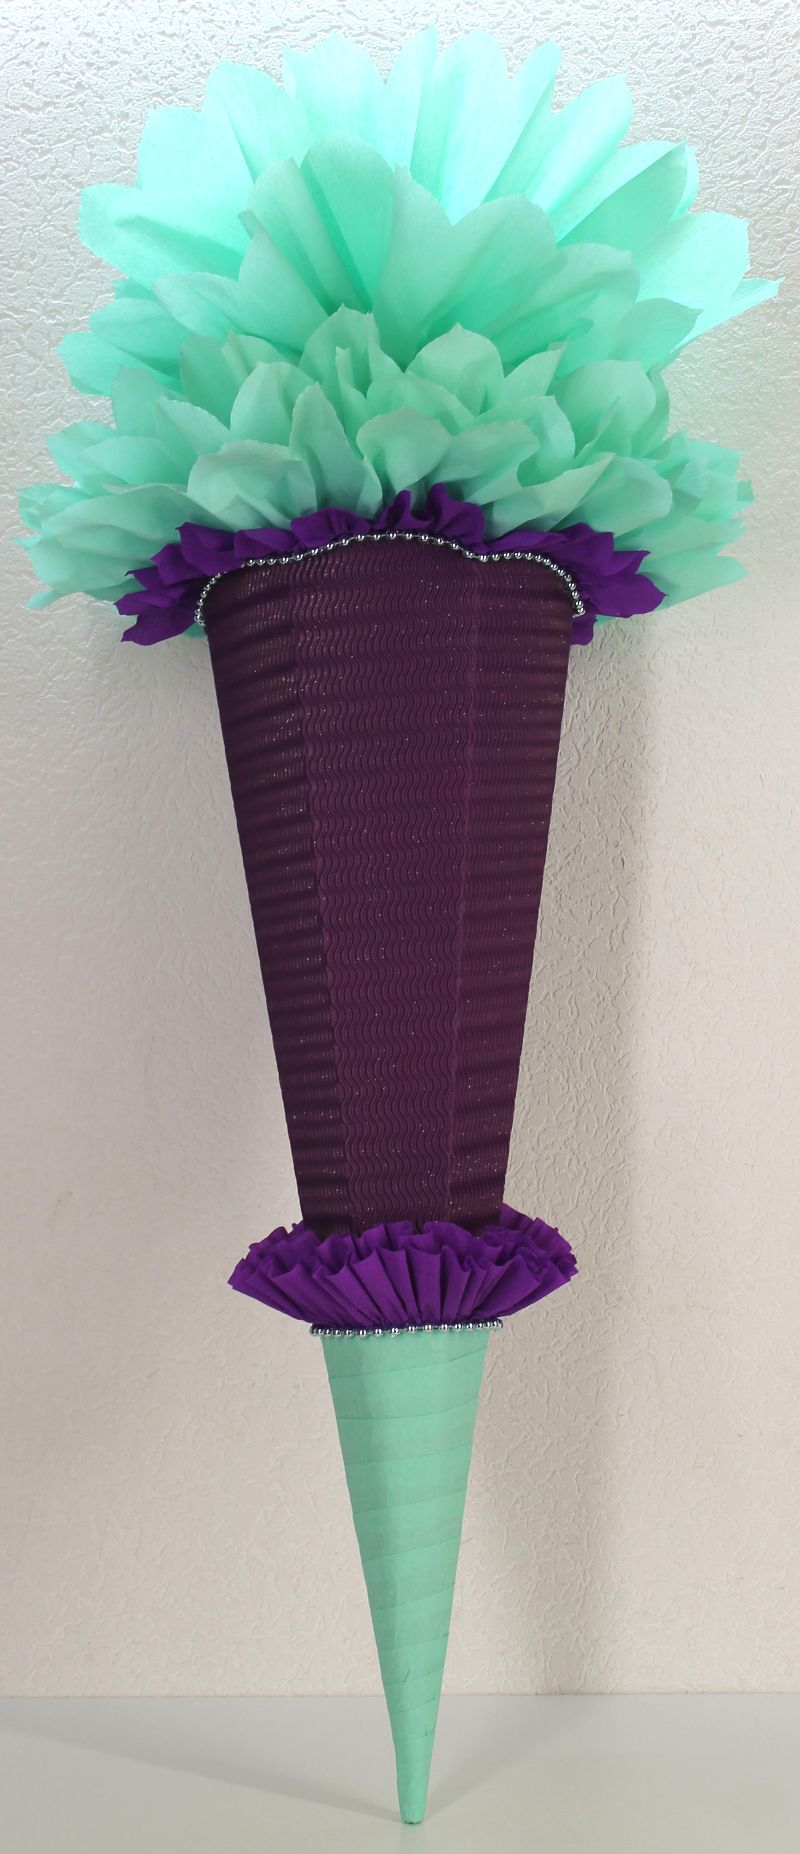  - Schultüte Zuckertüte Rohling zum selbst verzieren Rohling 70 75 80 85 90 100 cm / 1m für Mädchen HANDARBEIT violett mintgrün